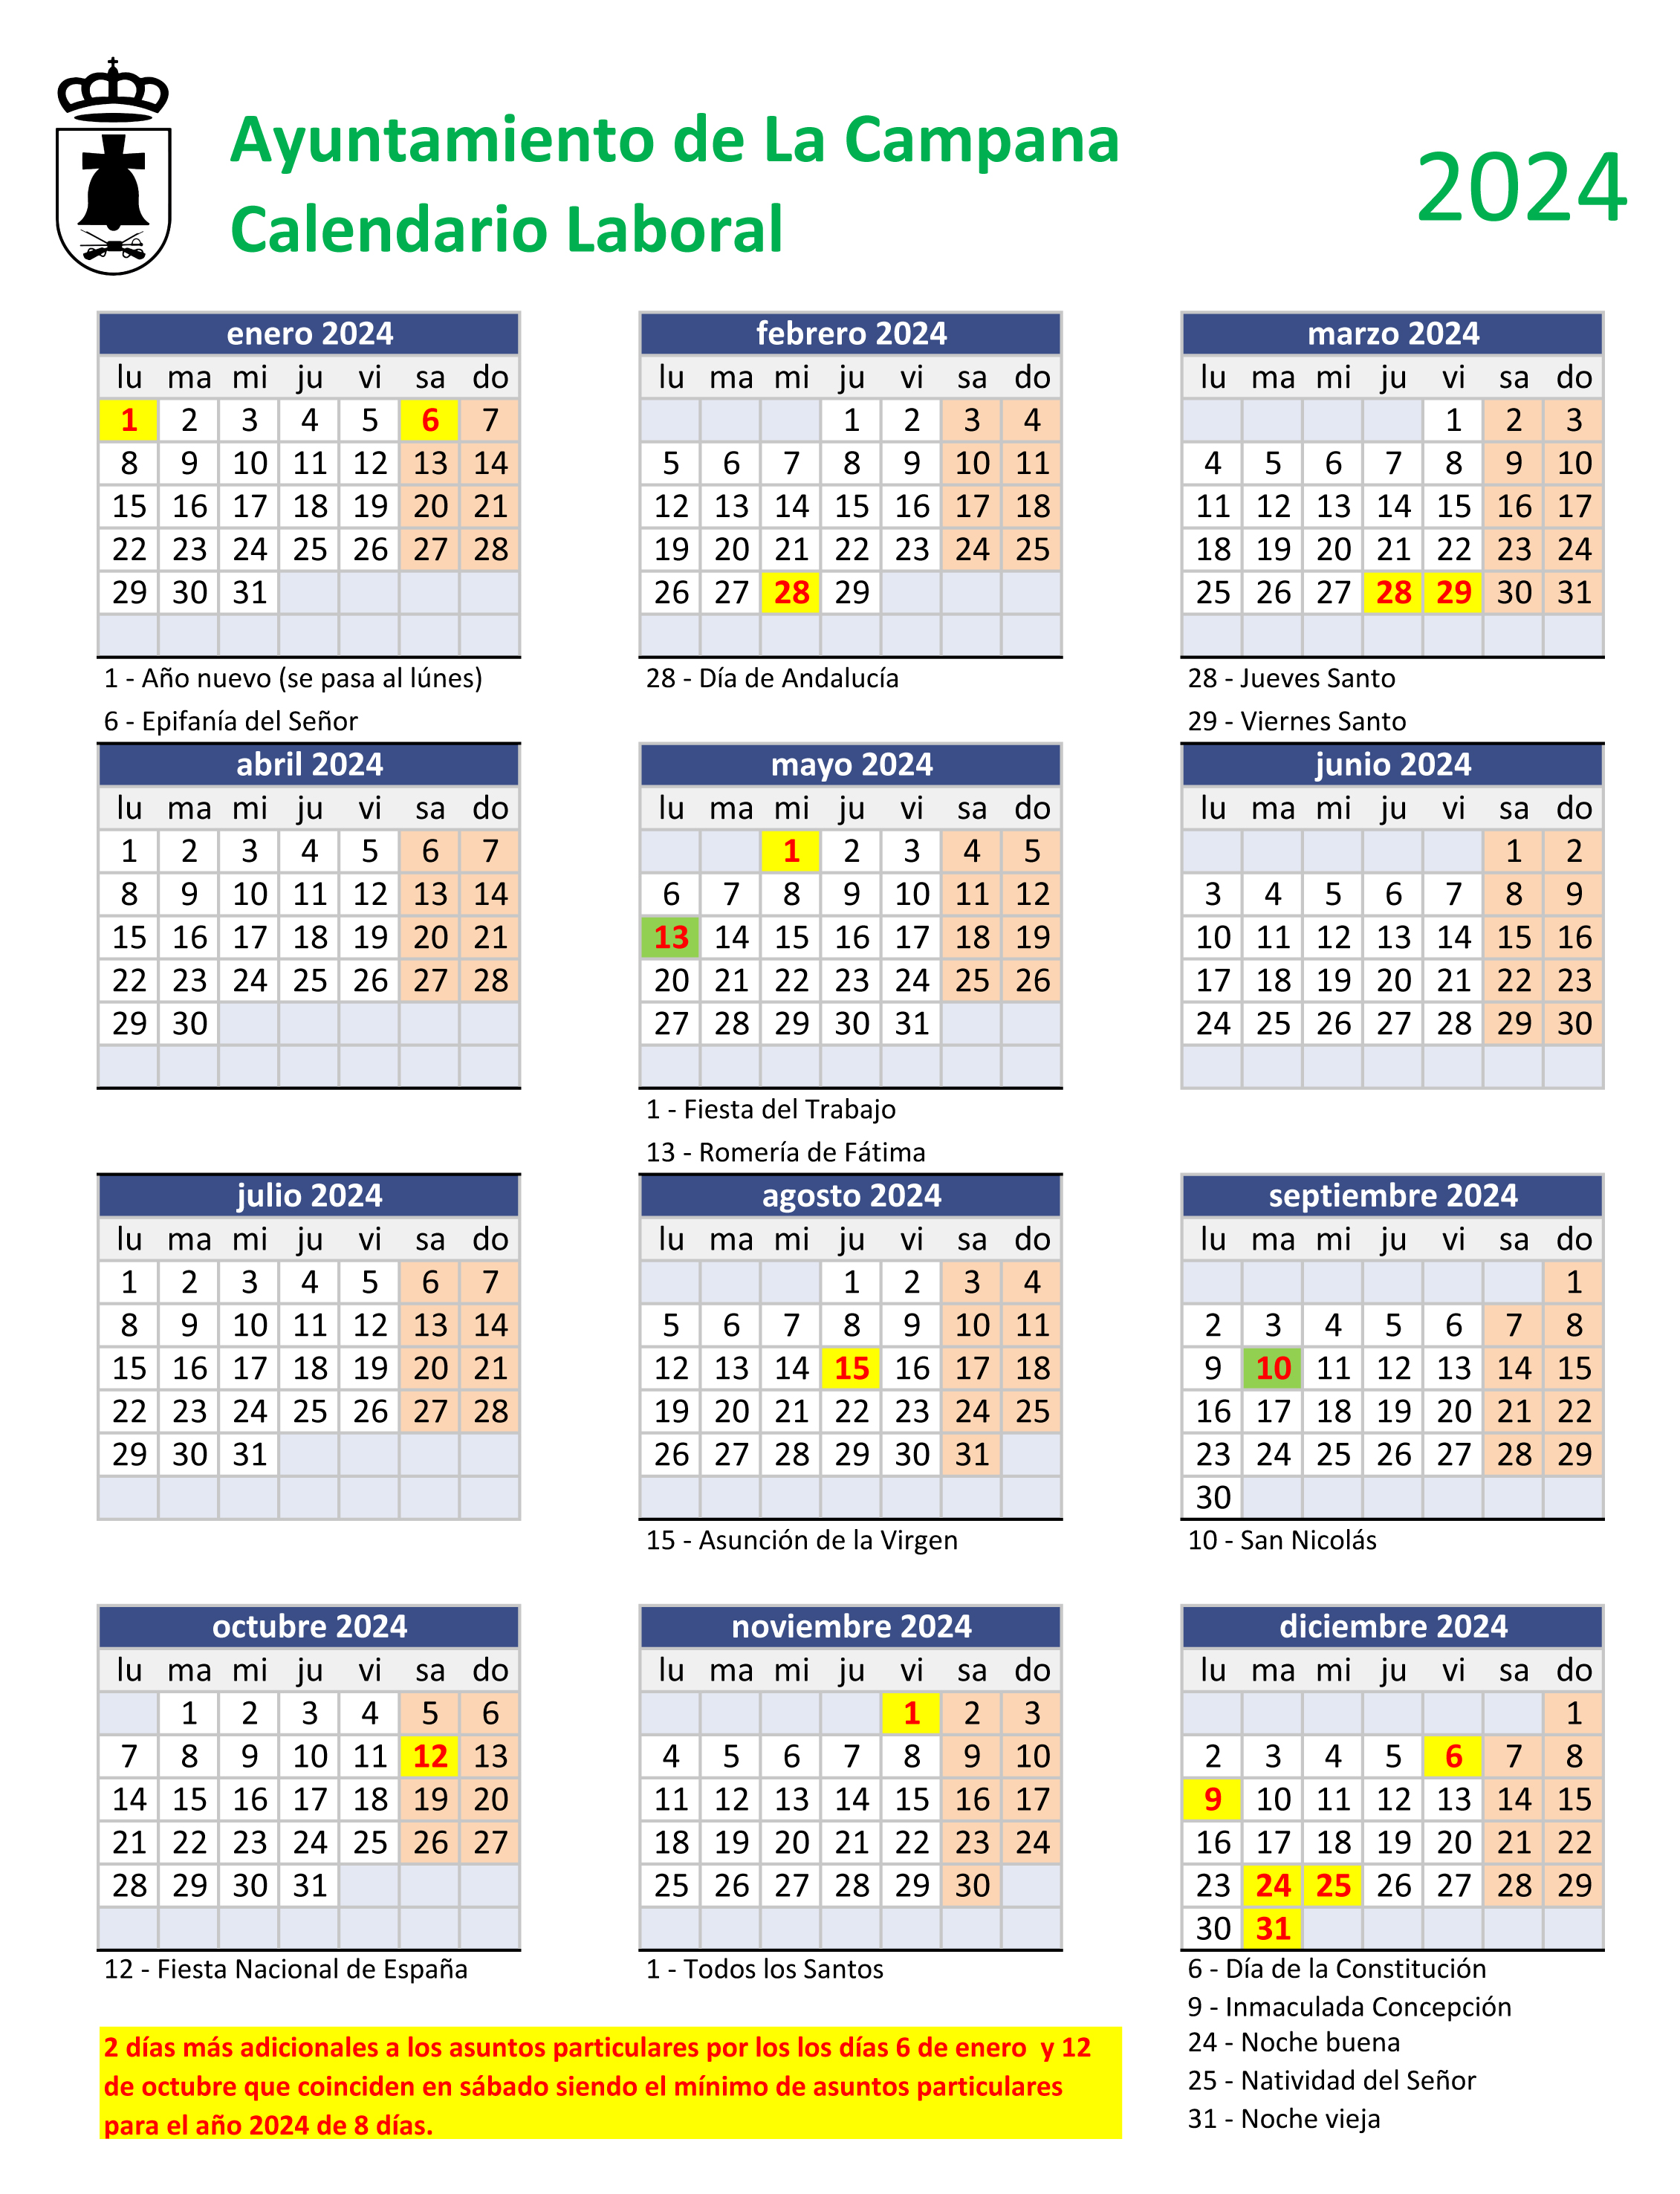 Calendario Laboral 2021